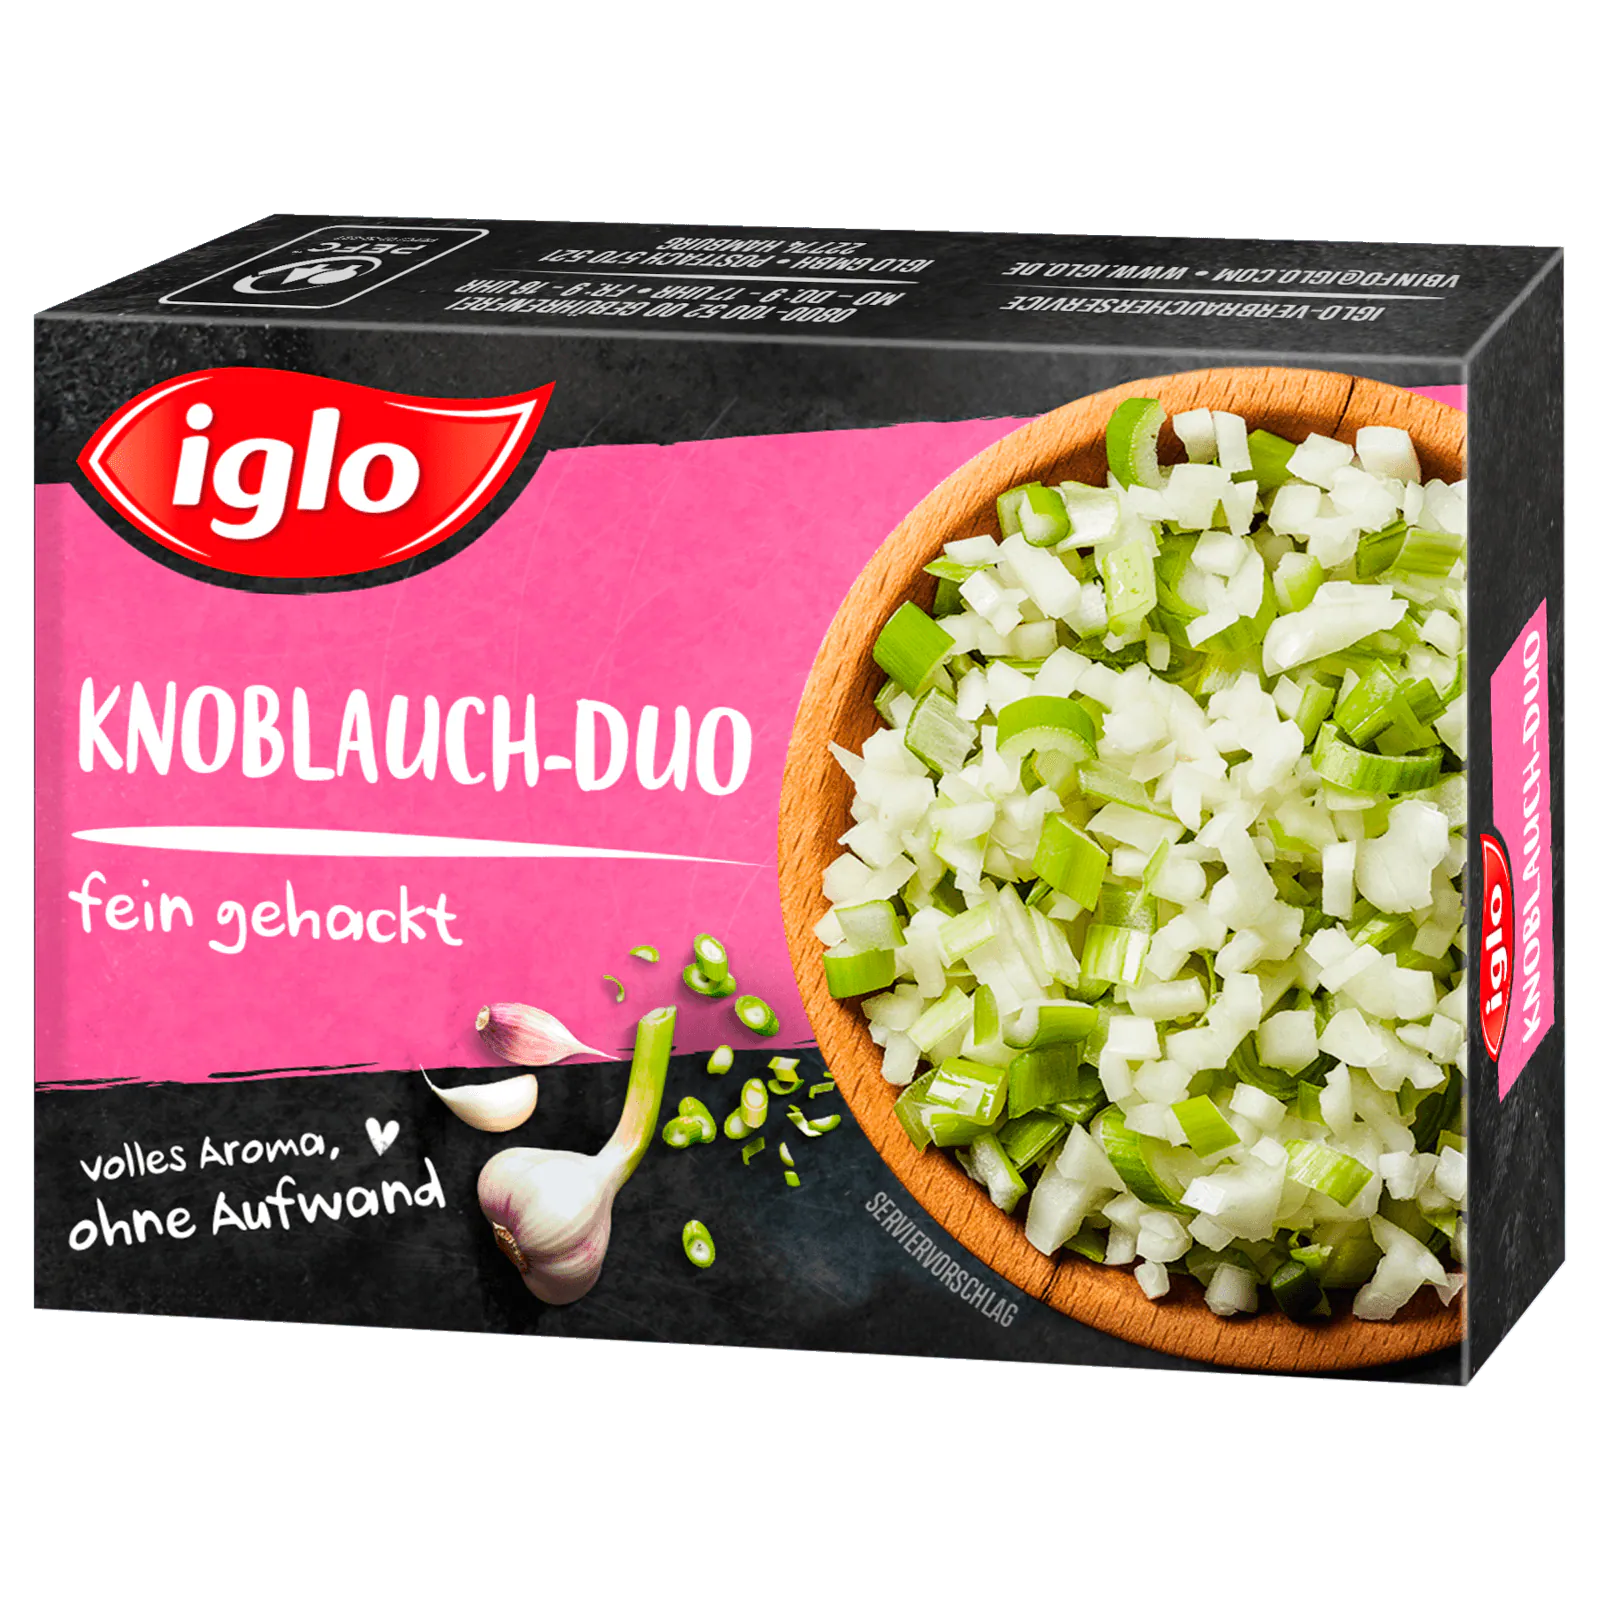 Iglo Knoblauch-Duo fein gehackt 60g